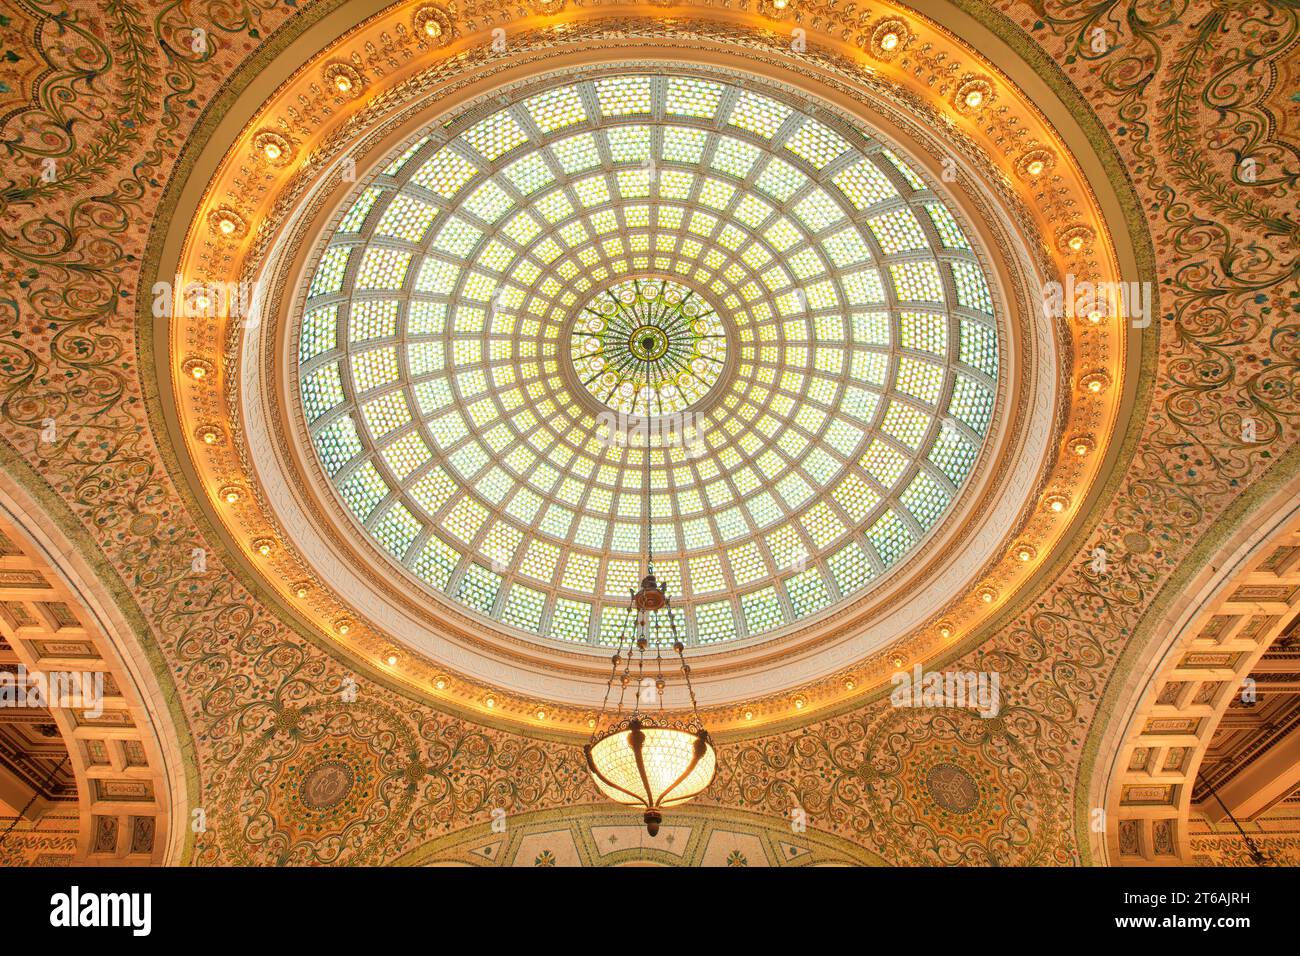 Oberlicht in der Preston Bradley Hall im Chicago Cultural Center, Illinois, USA. Stockfoto